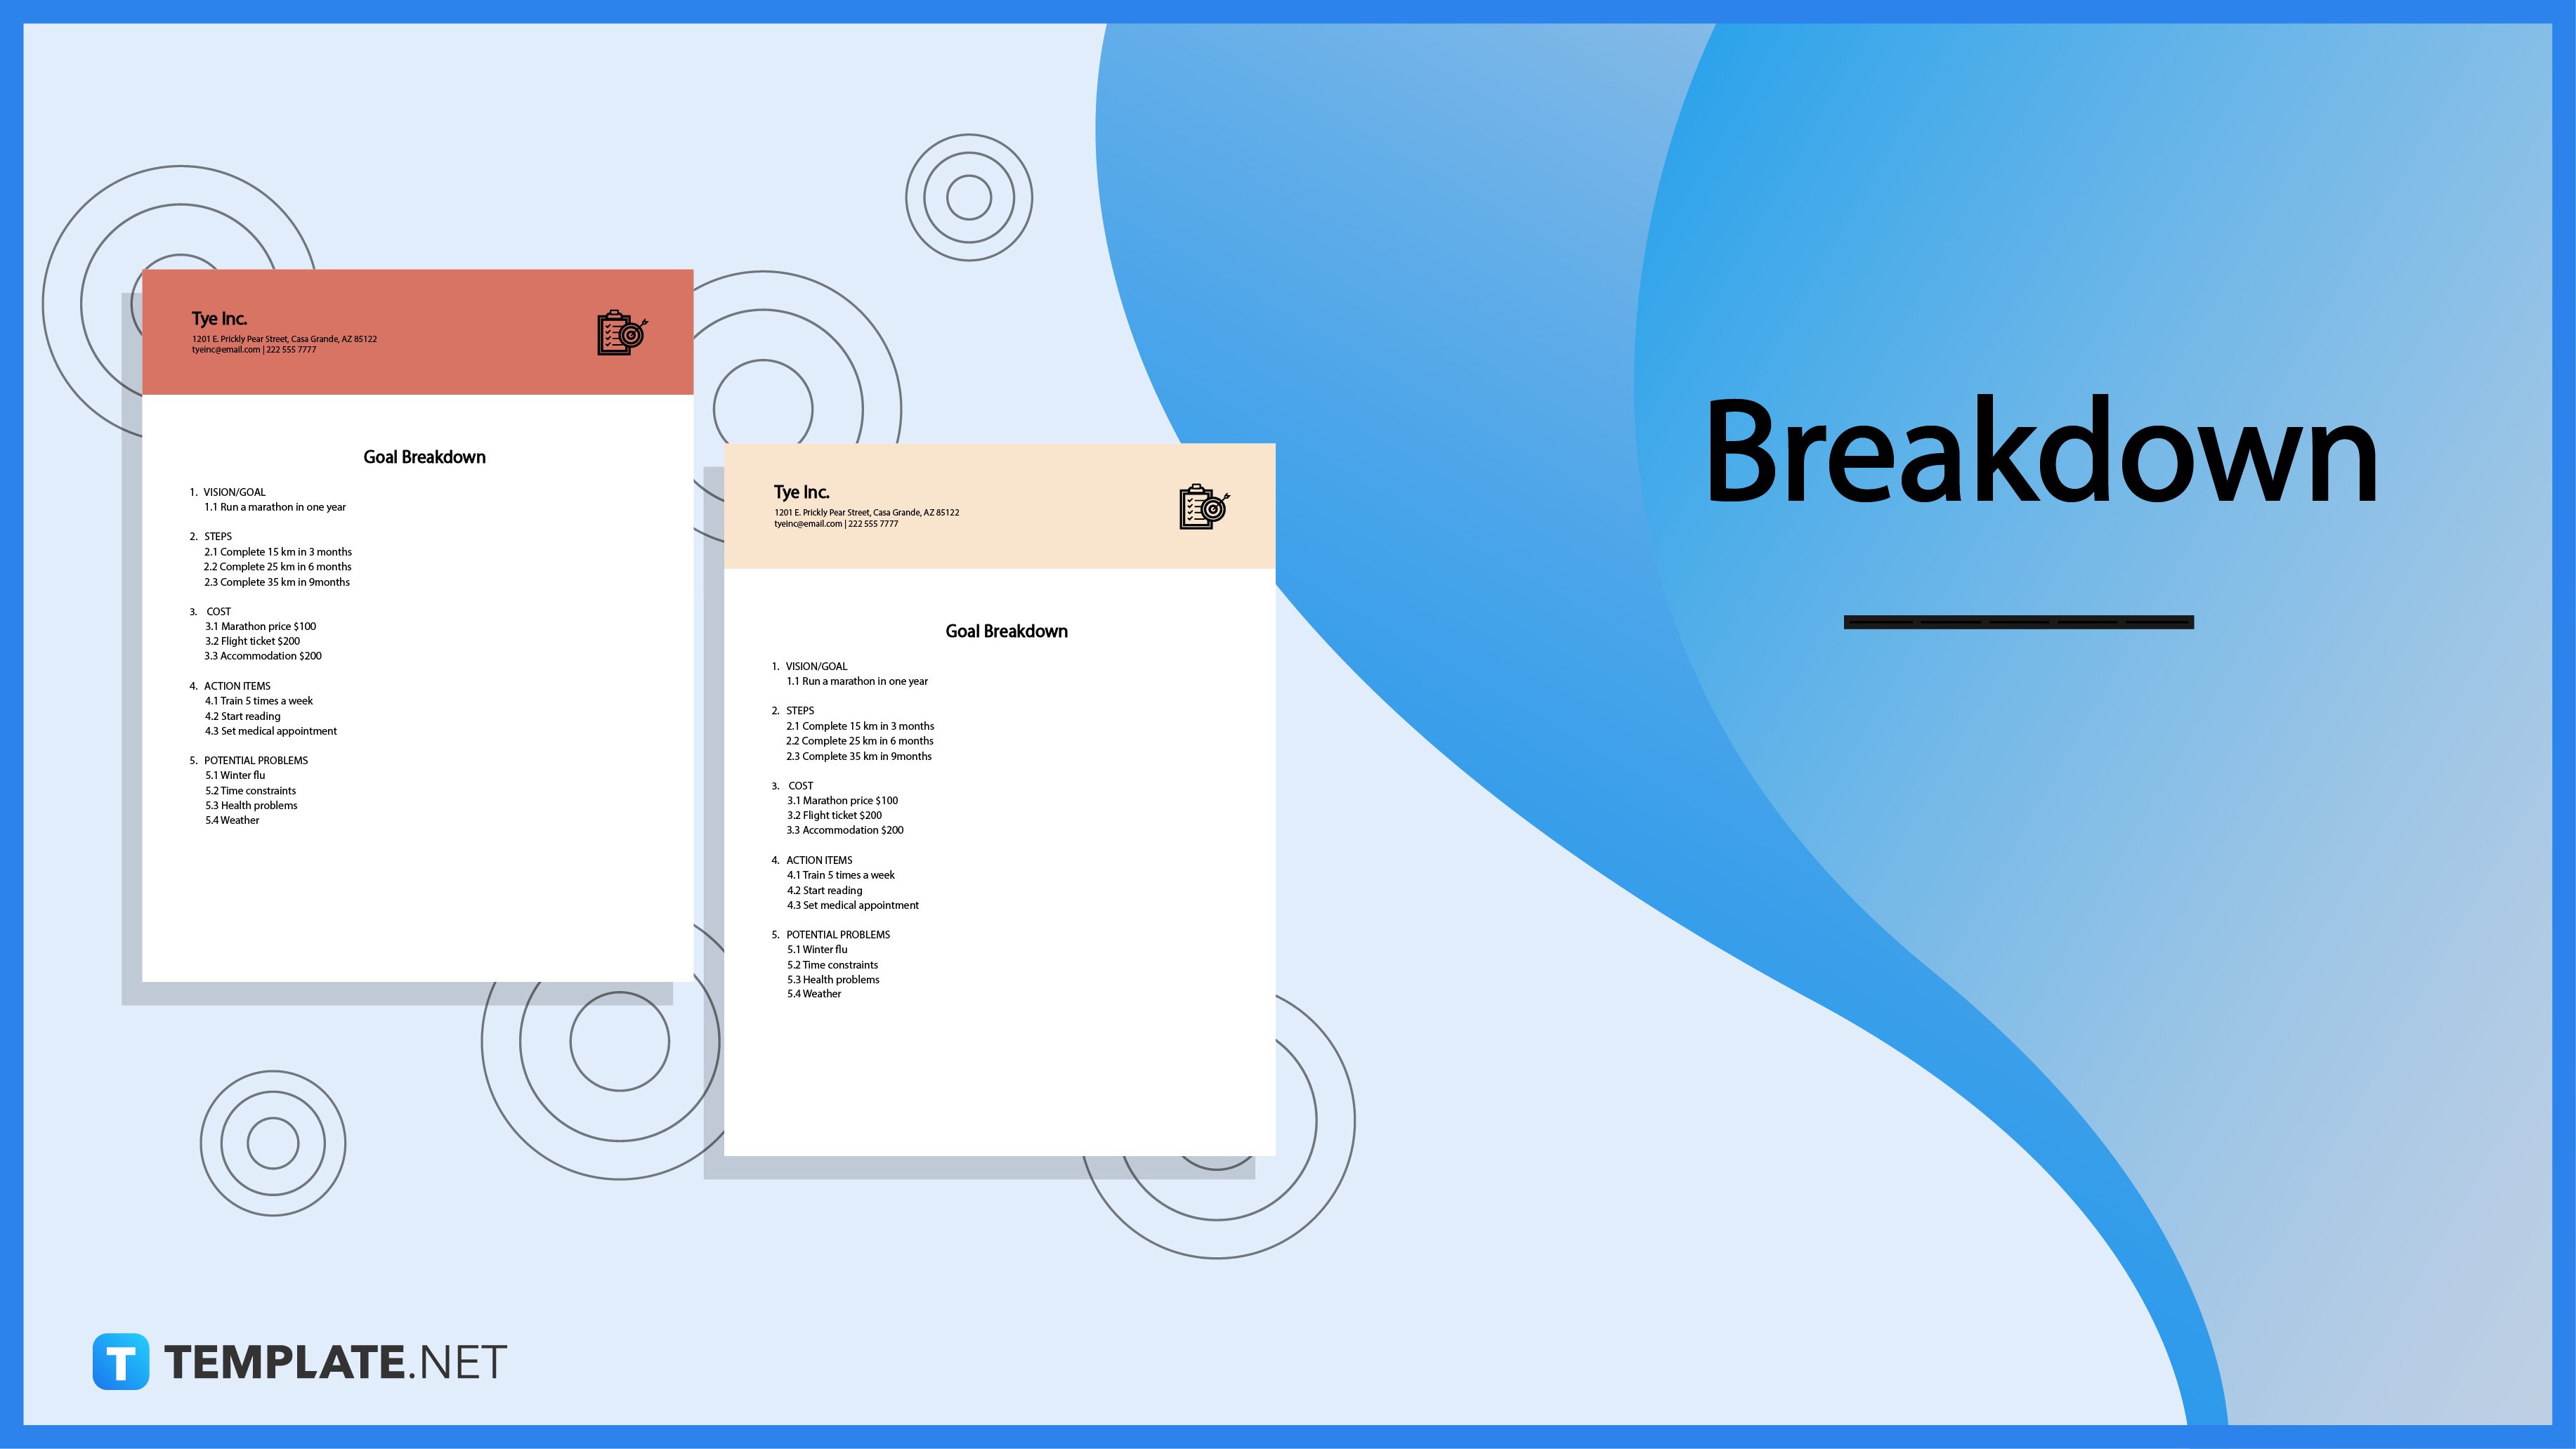 Breakdown - What is a Breakdown? Definition, Types, Uses